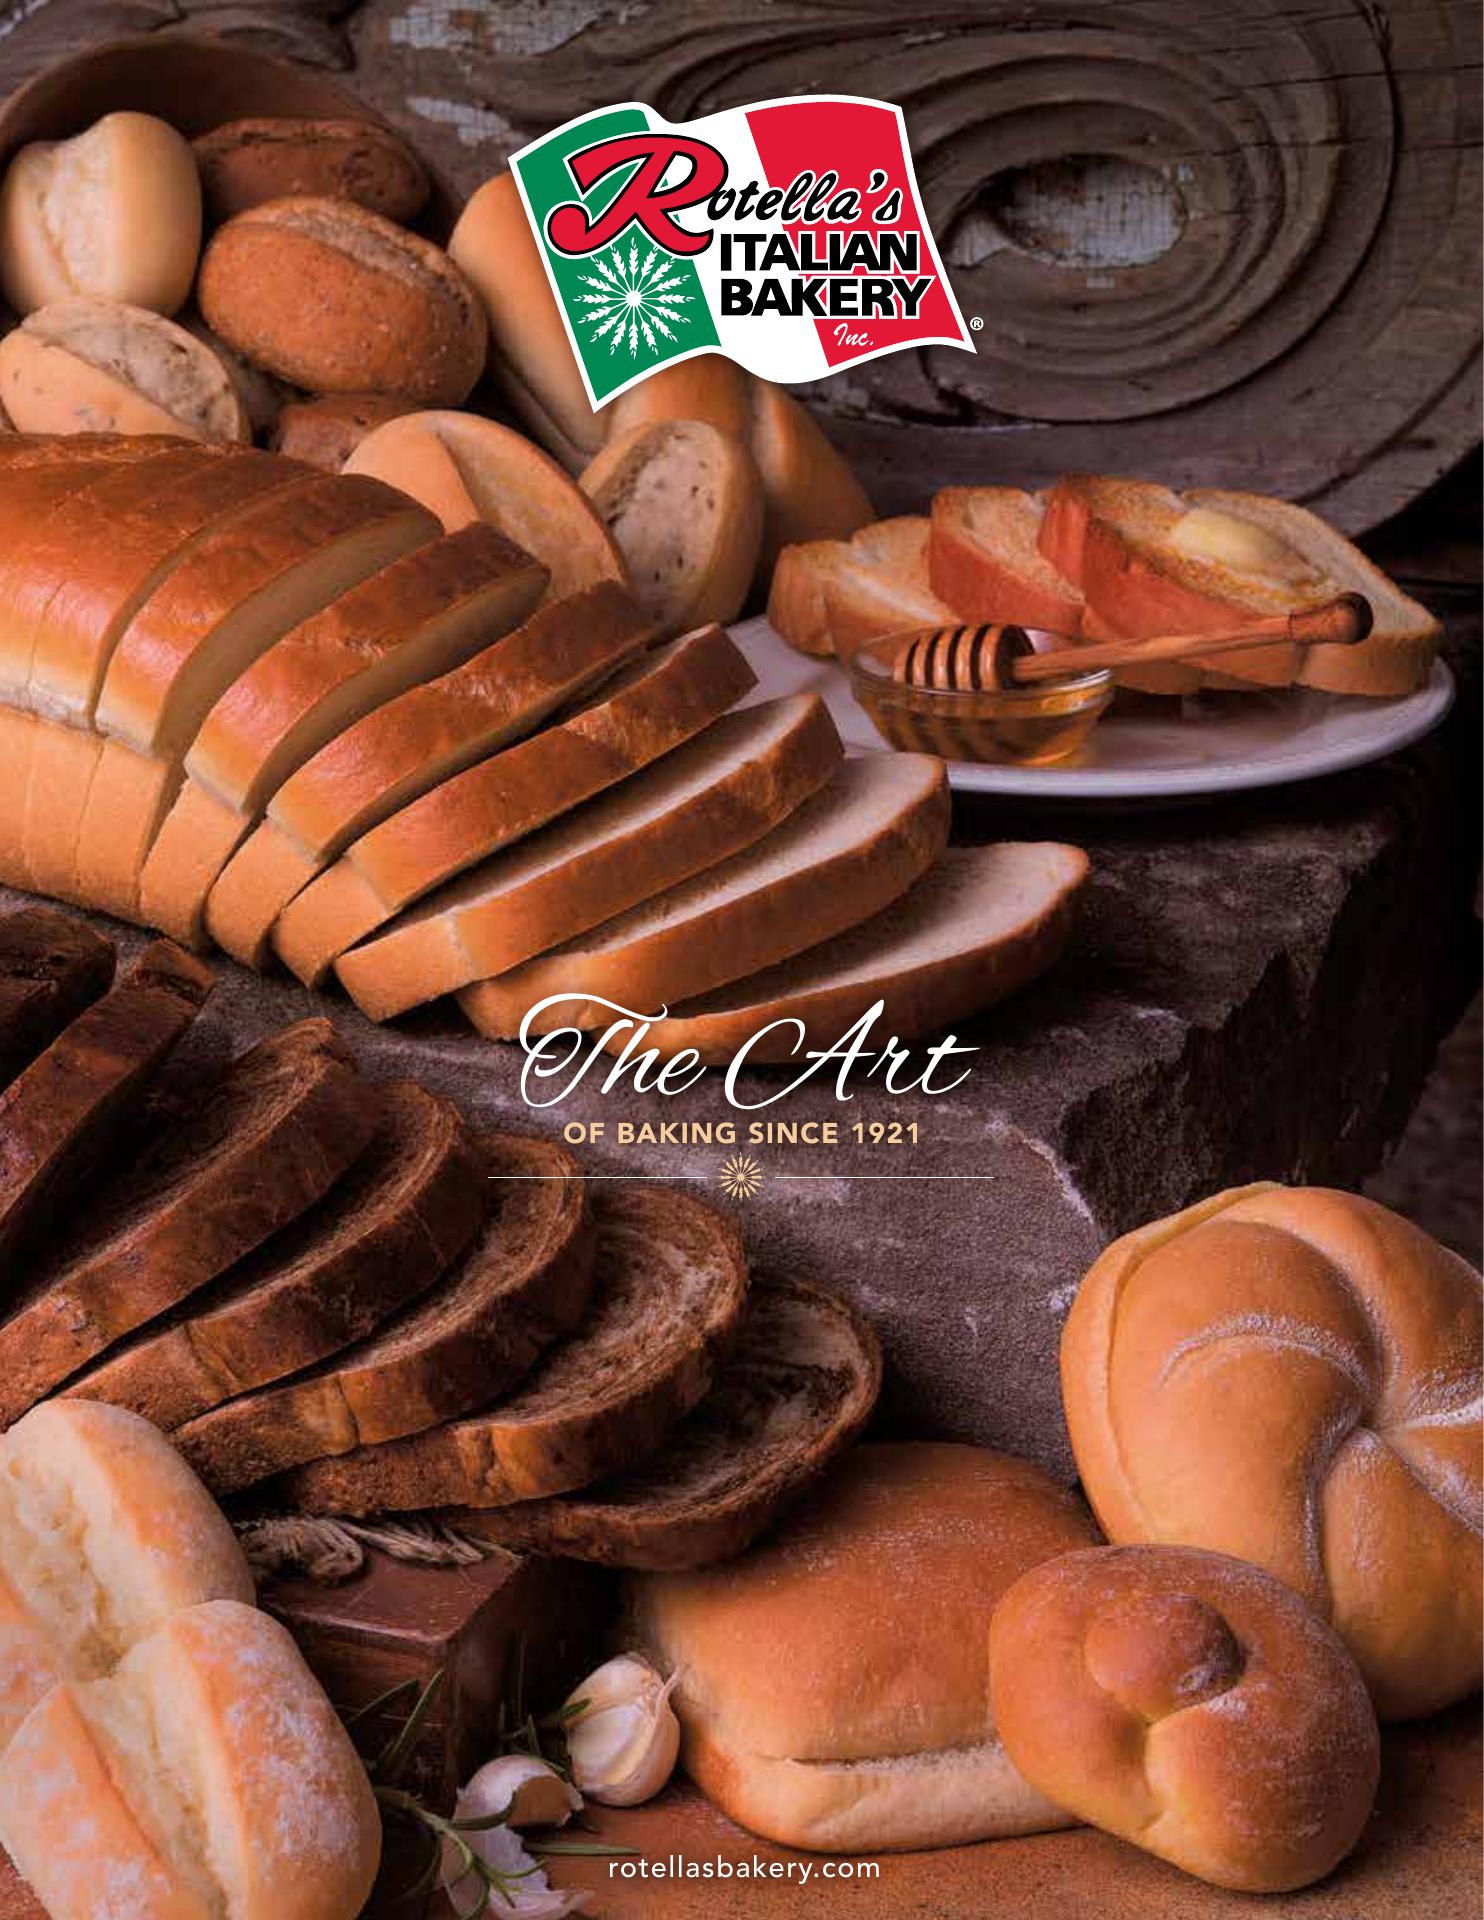 Rotella's Italian Bakery Inc